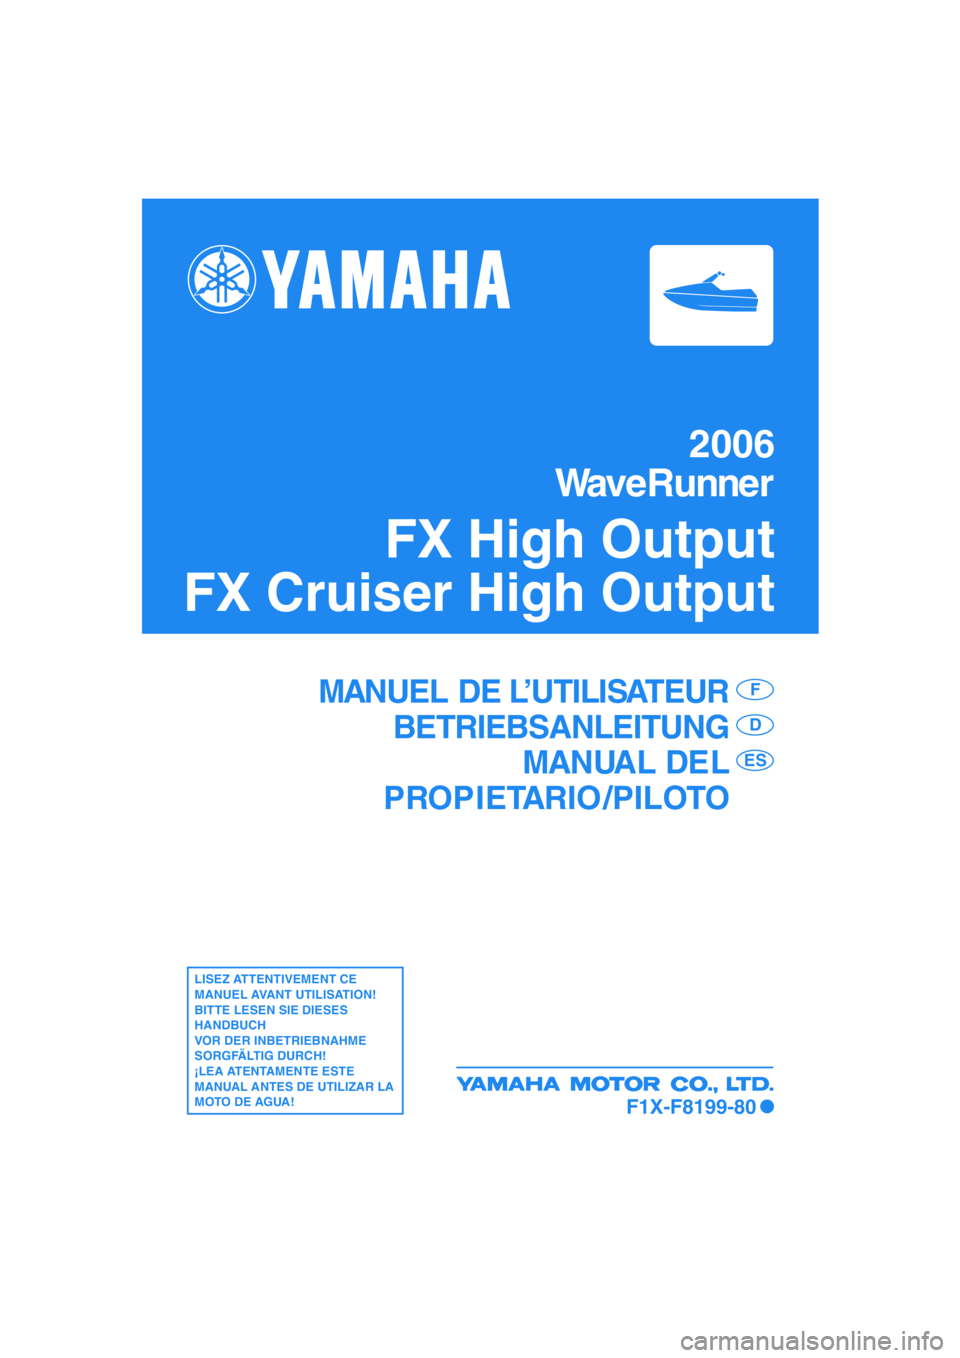 YAMAHA FX HO 2006  Notices Demploi (in French) 2006
WaveRunner
FX High Output
FX Cruiser High Output
MANUEL DE L’UTILISATEUR
BETRIEBSANLEITUNG
MANUAL DEL
PROPIETARIO /PILOTOF
D
ES
LISEZ ATTENTIVEMENT CE 
MANUEL AVANT UTILISATION!
BITTE LESEN SIE